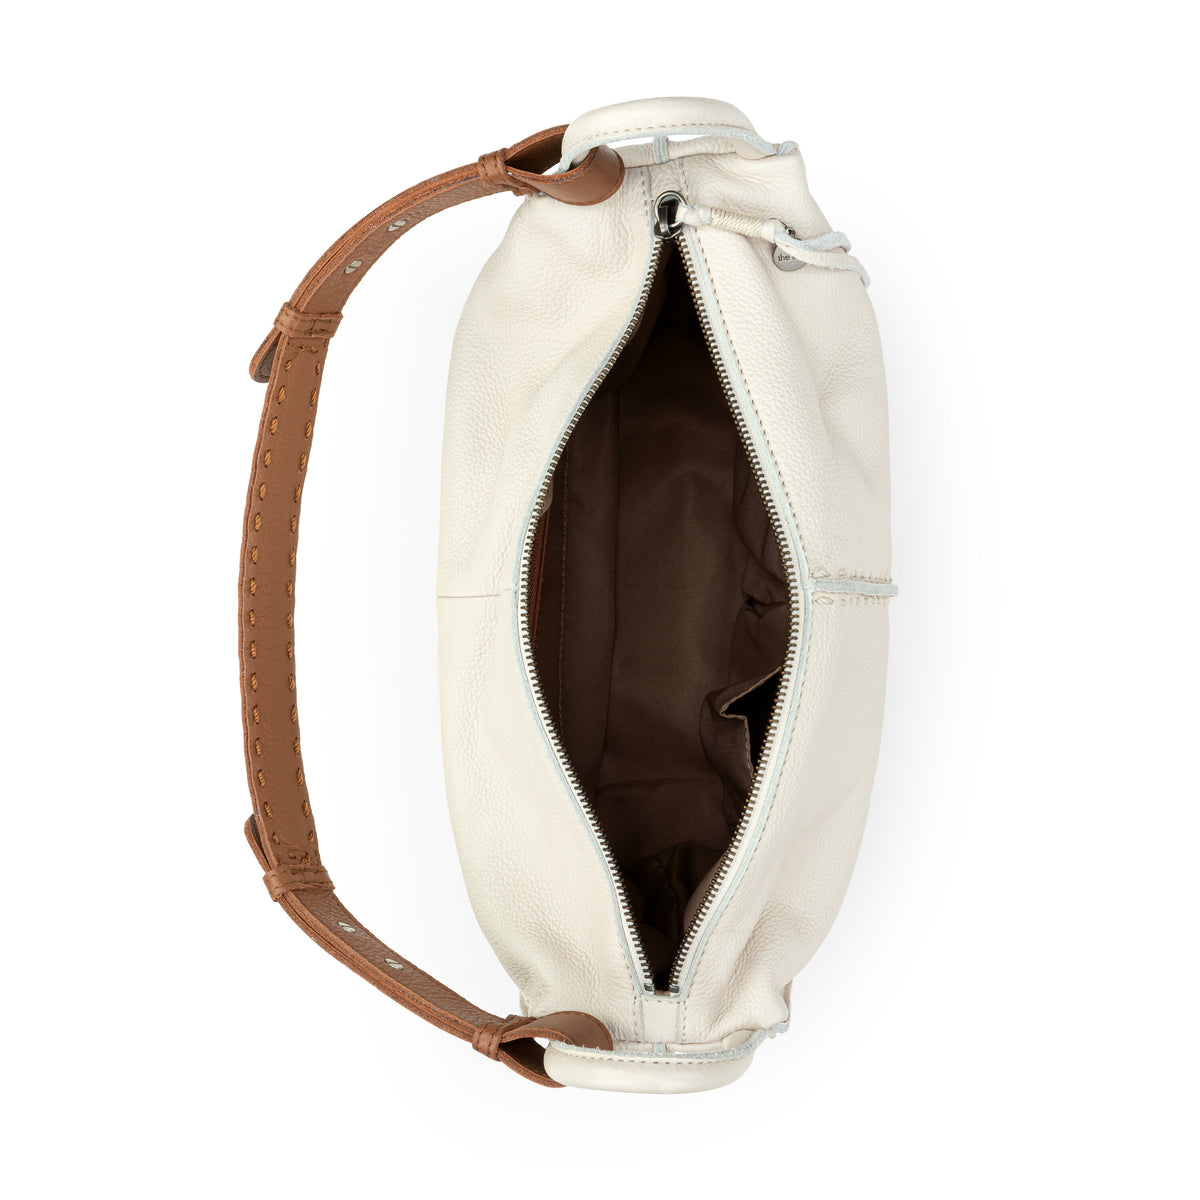 Los Feliz Hobo | Slouchy Leather Shoulder Bag – The Sak